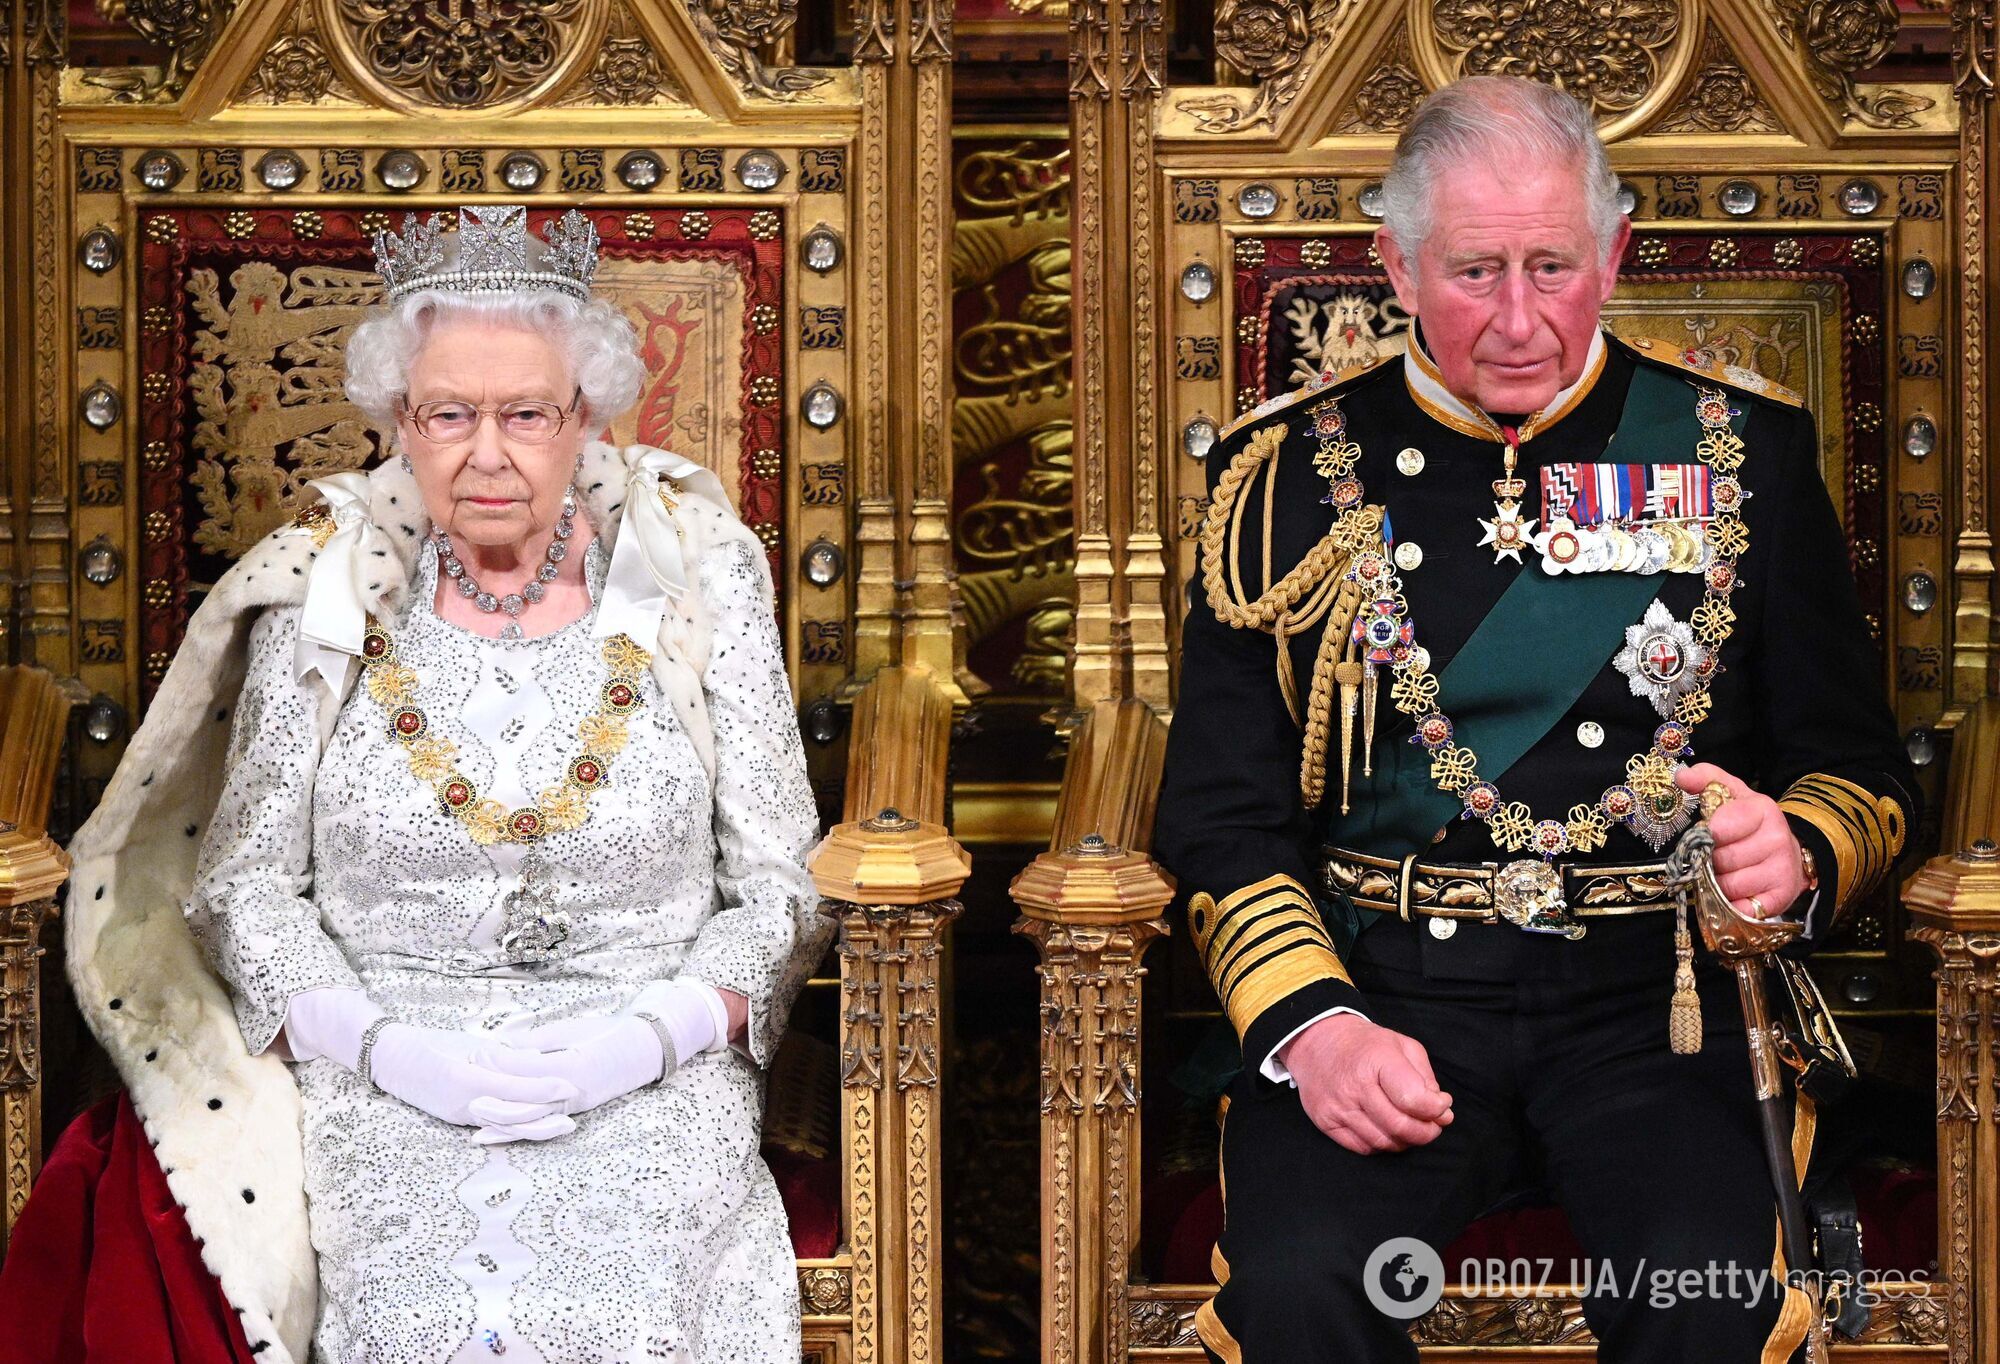 Як називати нового короля Великої Британії: Чарльз III чи Карл III. Пояснення